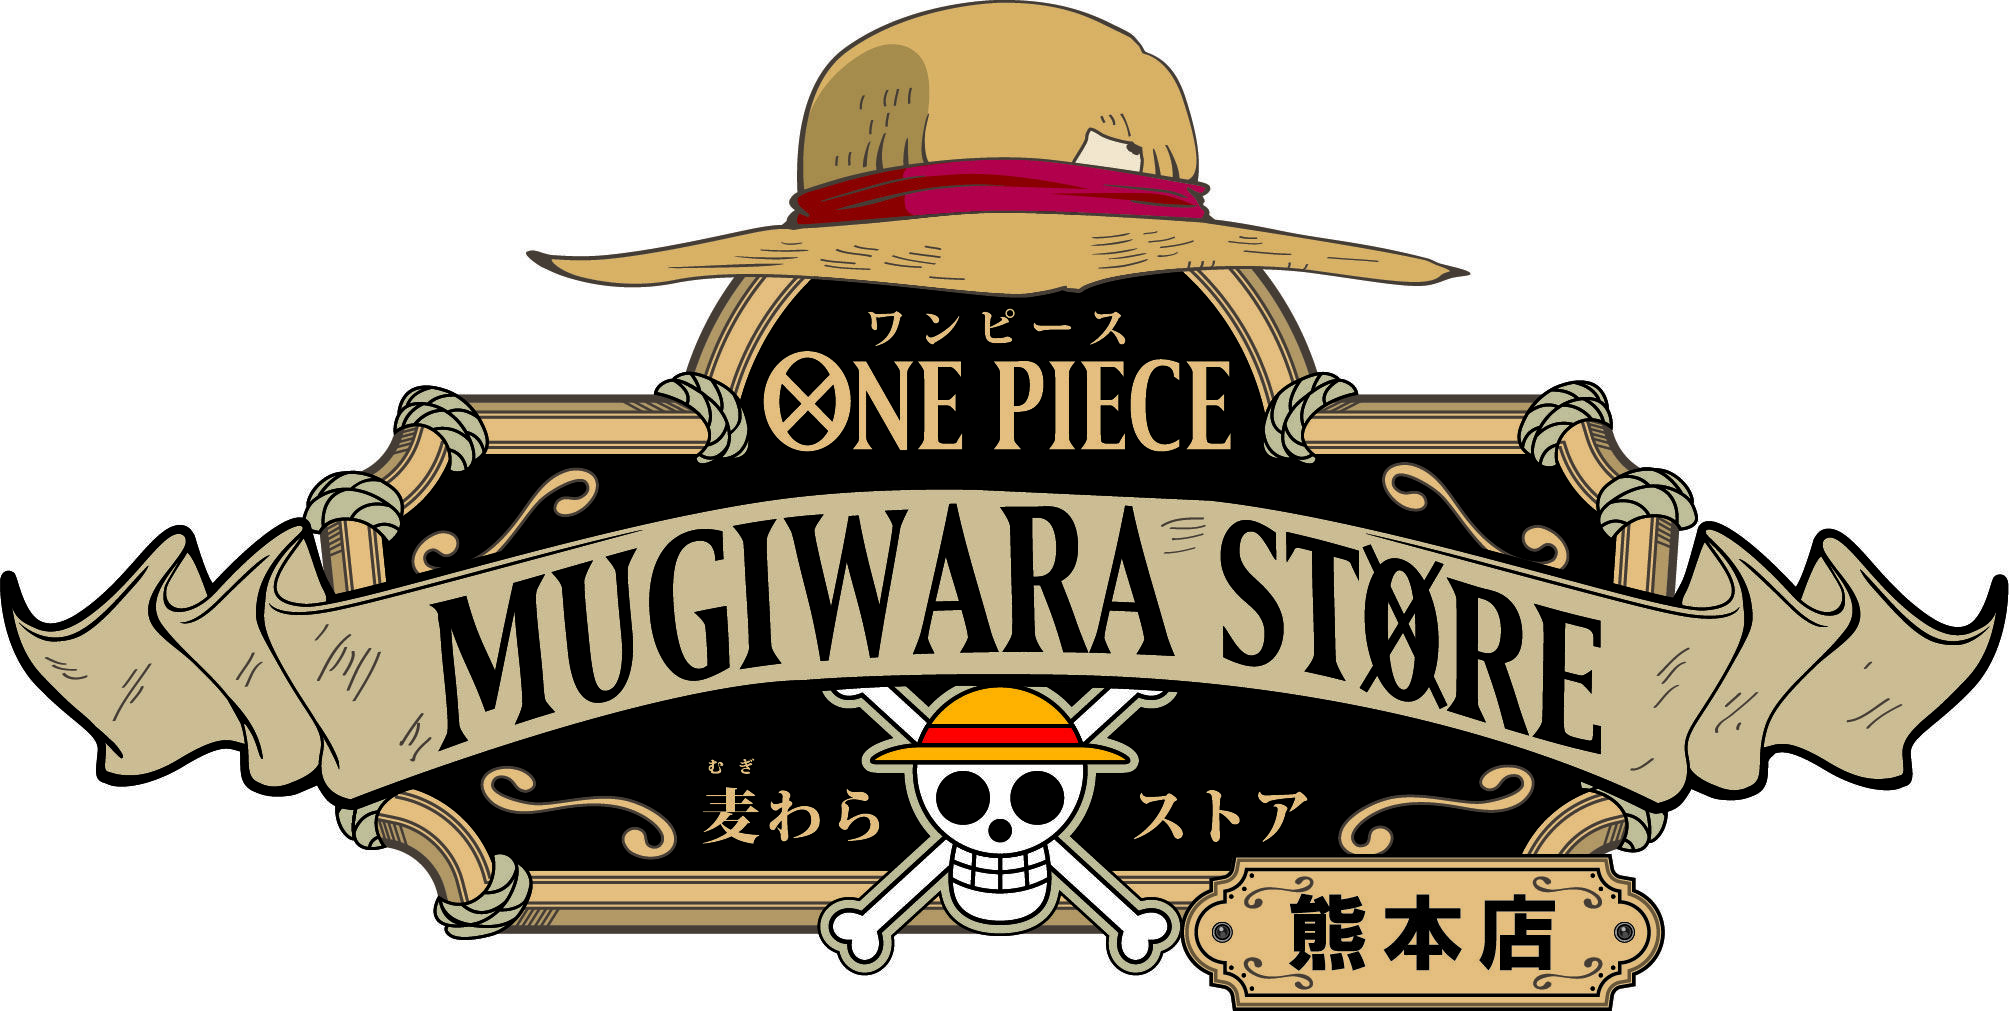 熊本店 長期アルバイトスタッフ募集中 One Piece 麦わらストア 航海日誌